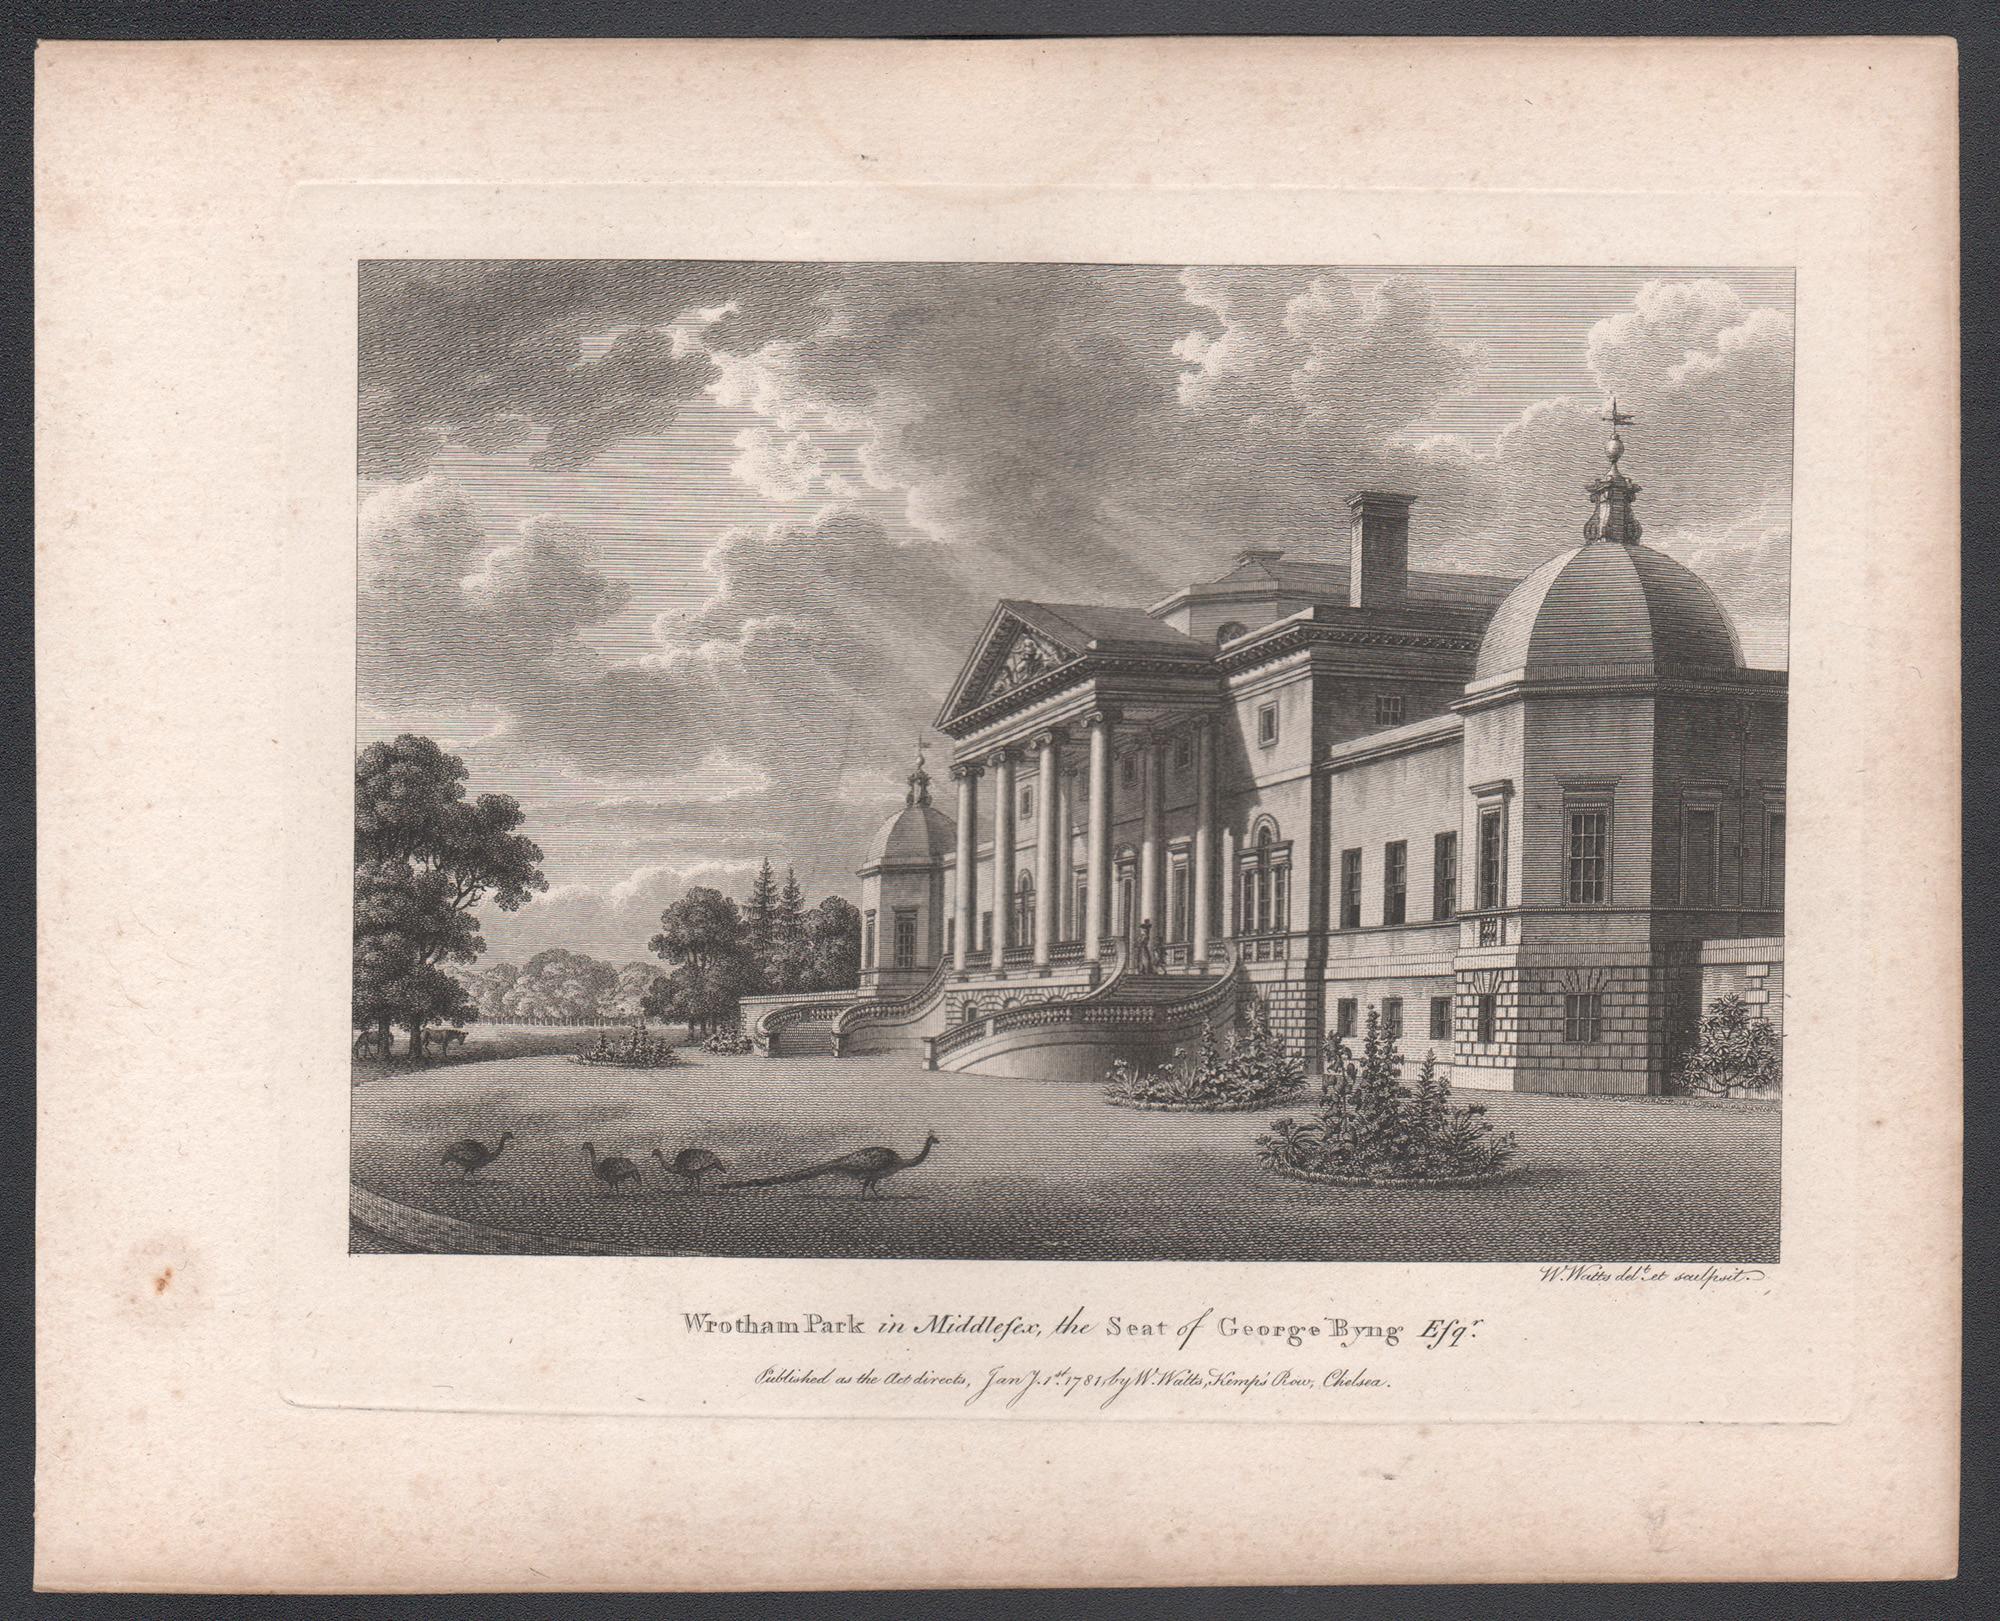 Wrotham Park in Middlesex, Gravur eines englischen Landhauses aus dem 18. Jahrhundert, 1781 – Print von William Watts